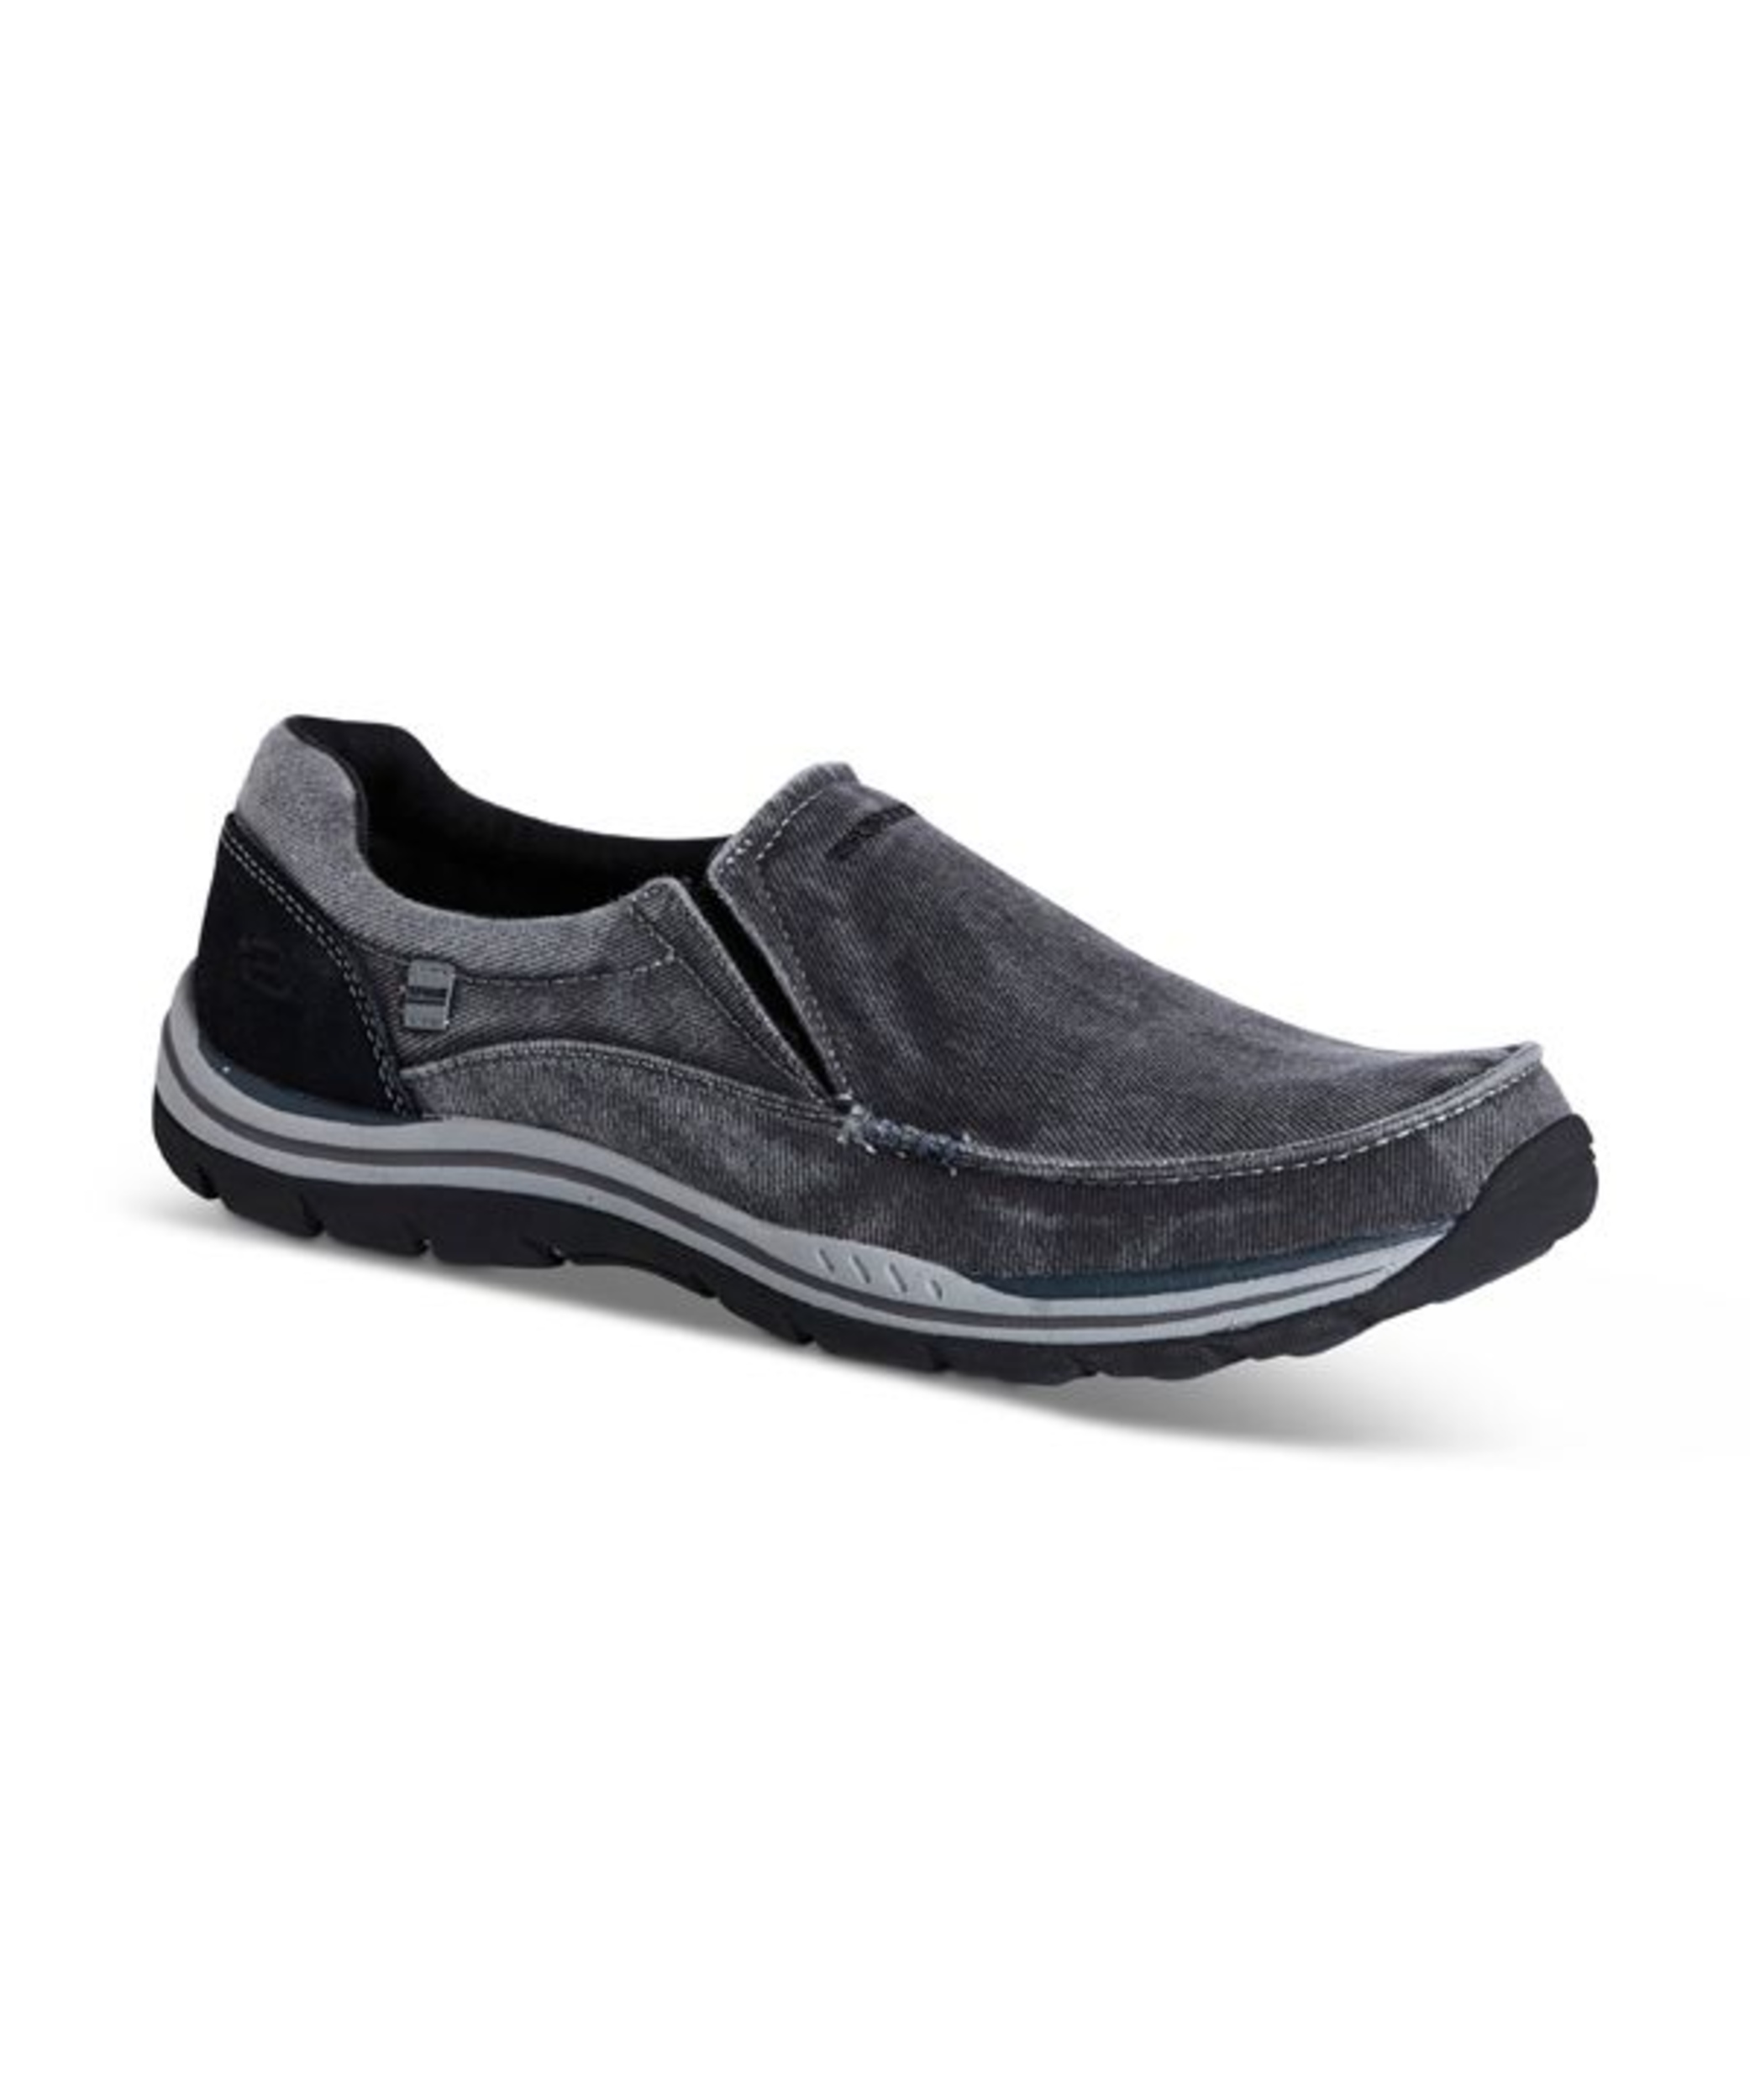 Skechers Men's Expected Avillo Relaxed Fit Slip On Shoes - Black | Marks